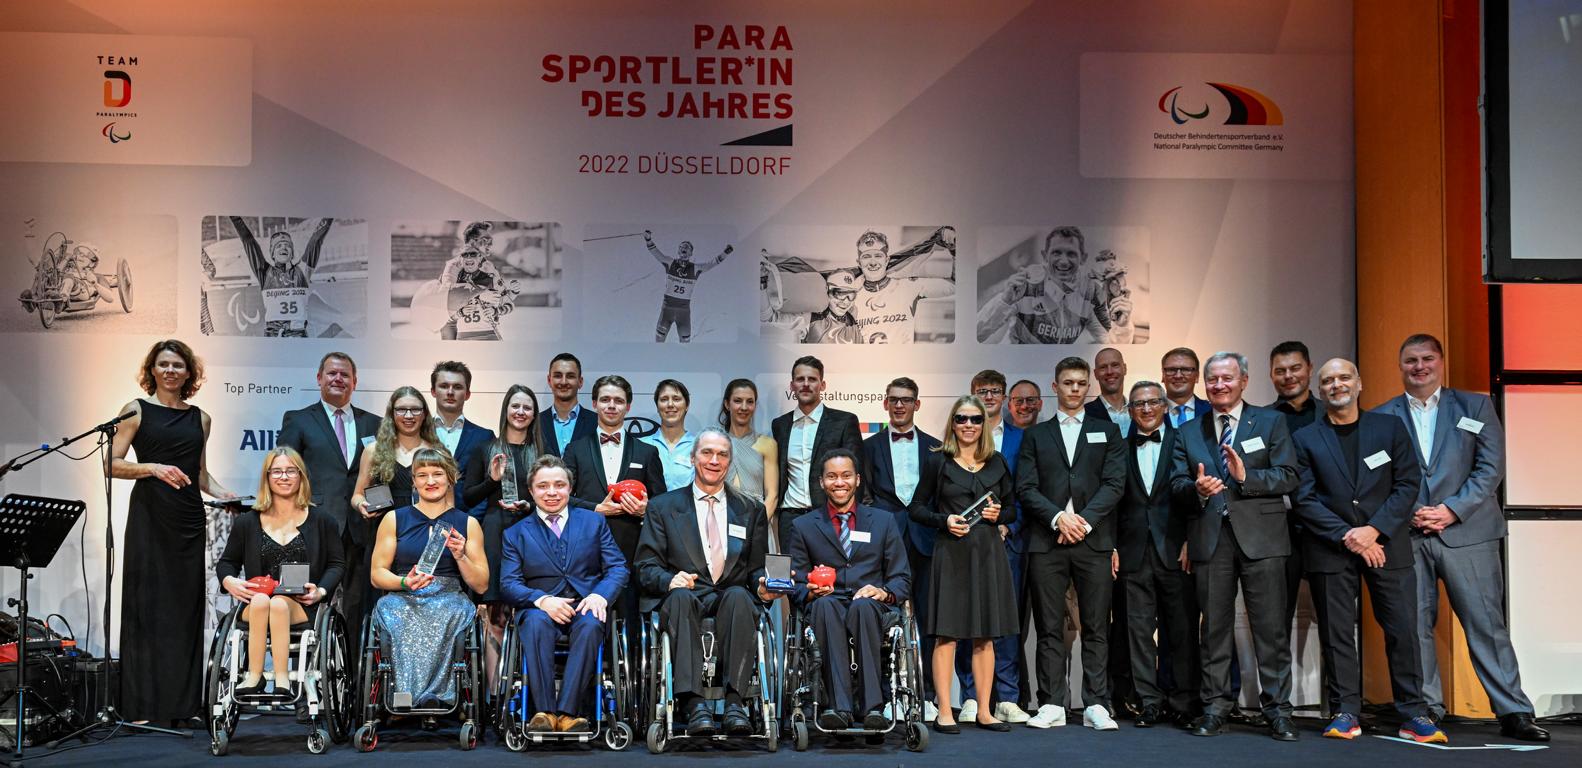 Gruppenfoto der Para Sportlerinnen des Jahres Foto Ralf Kuckuck DBS 79187